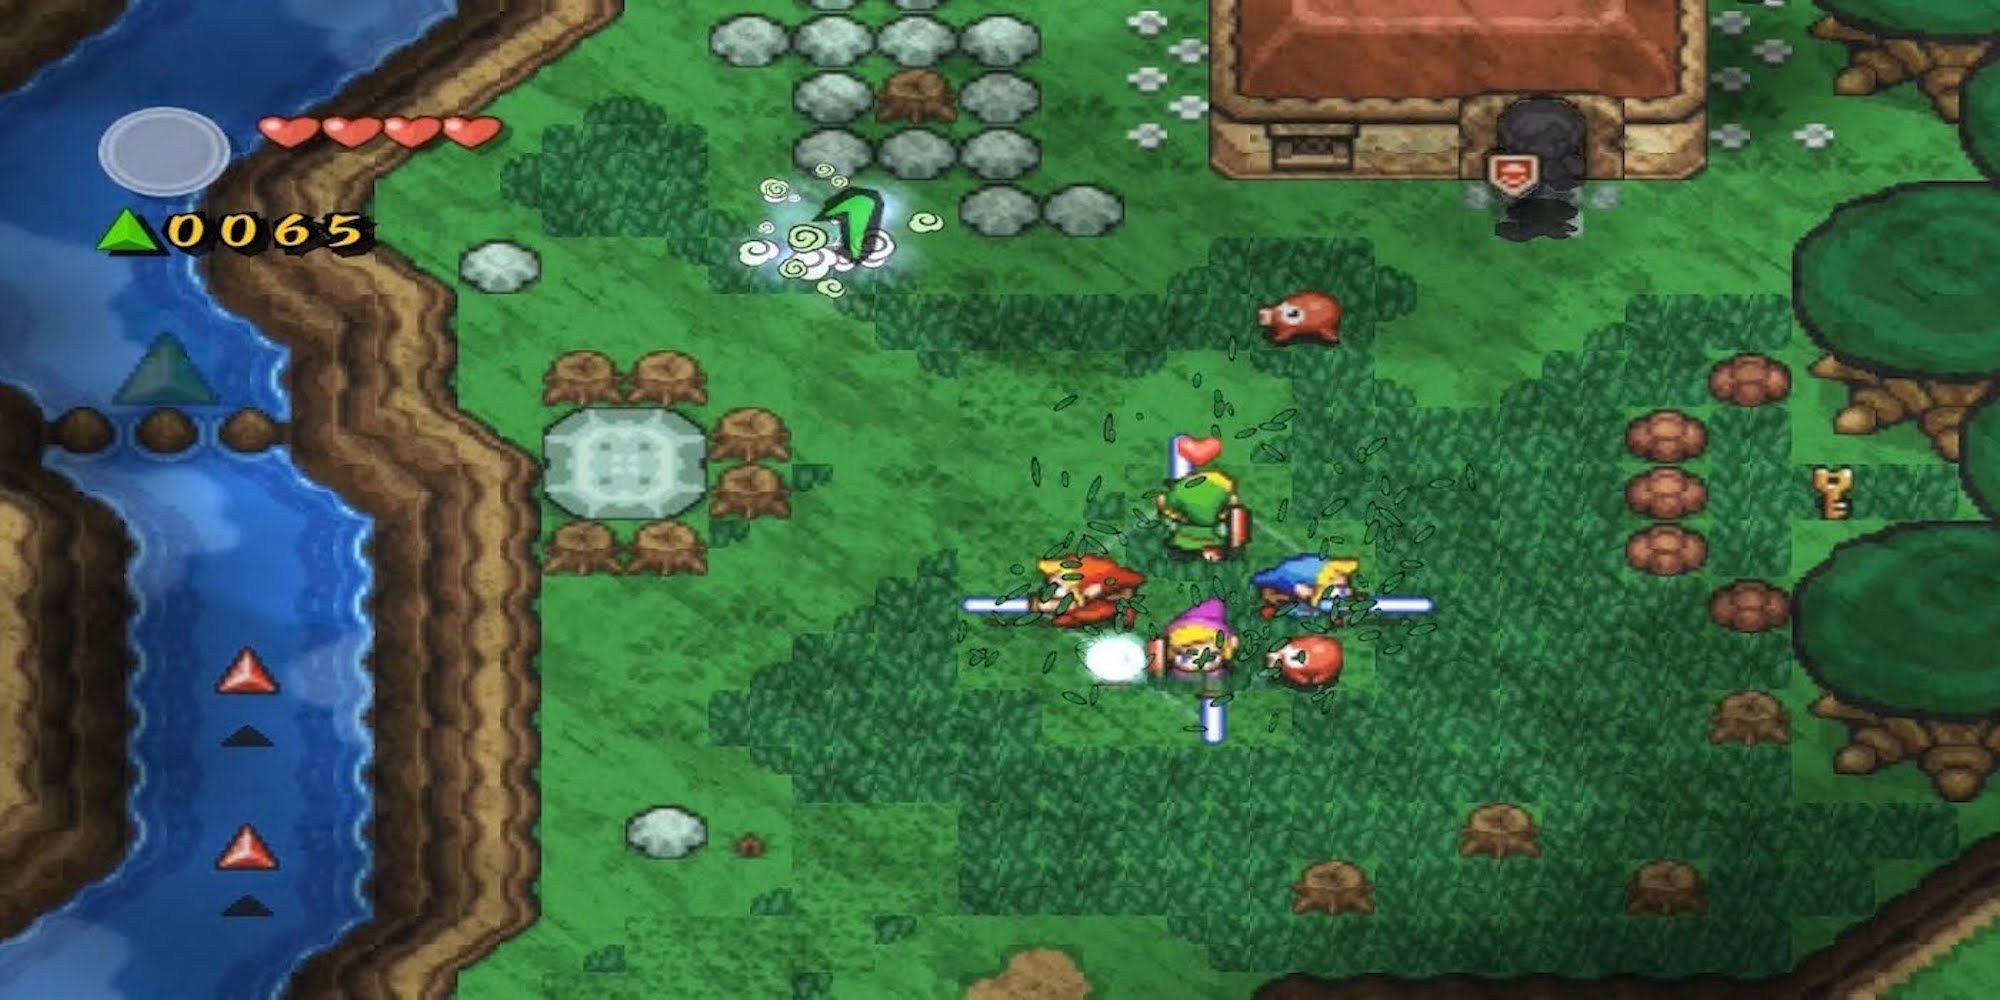 Fight enemies in The Legend of Zelda Four Swords Adventures